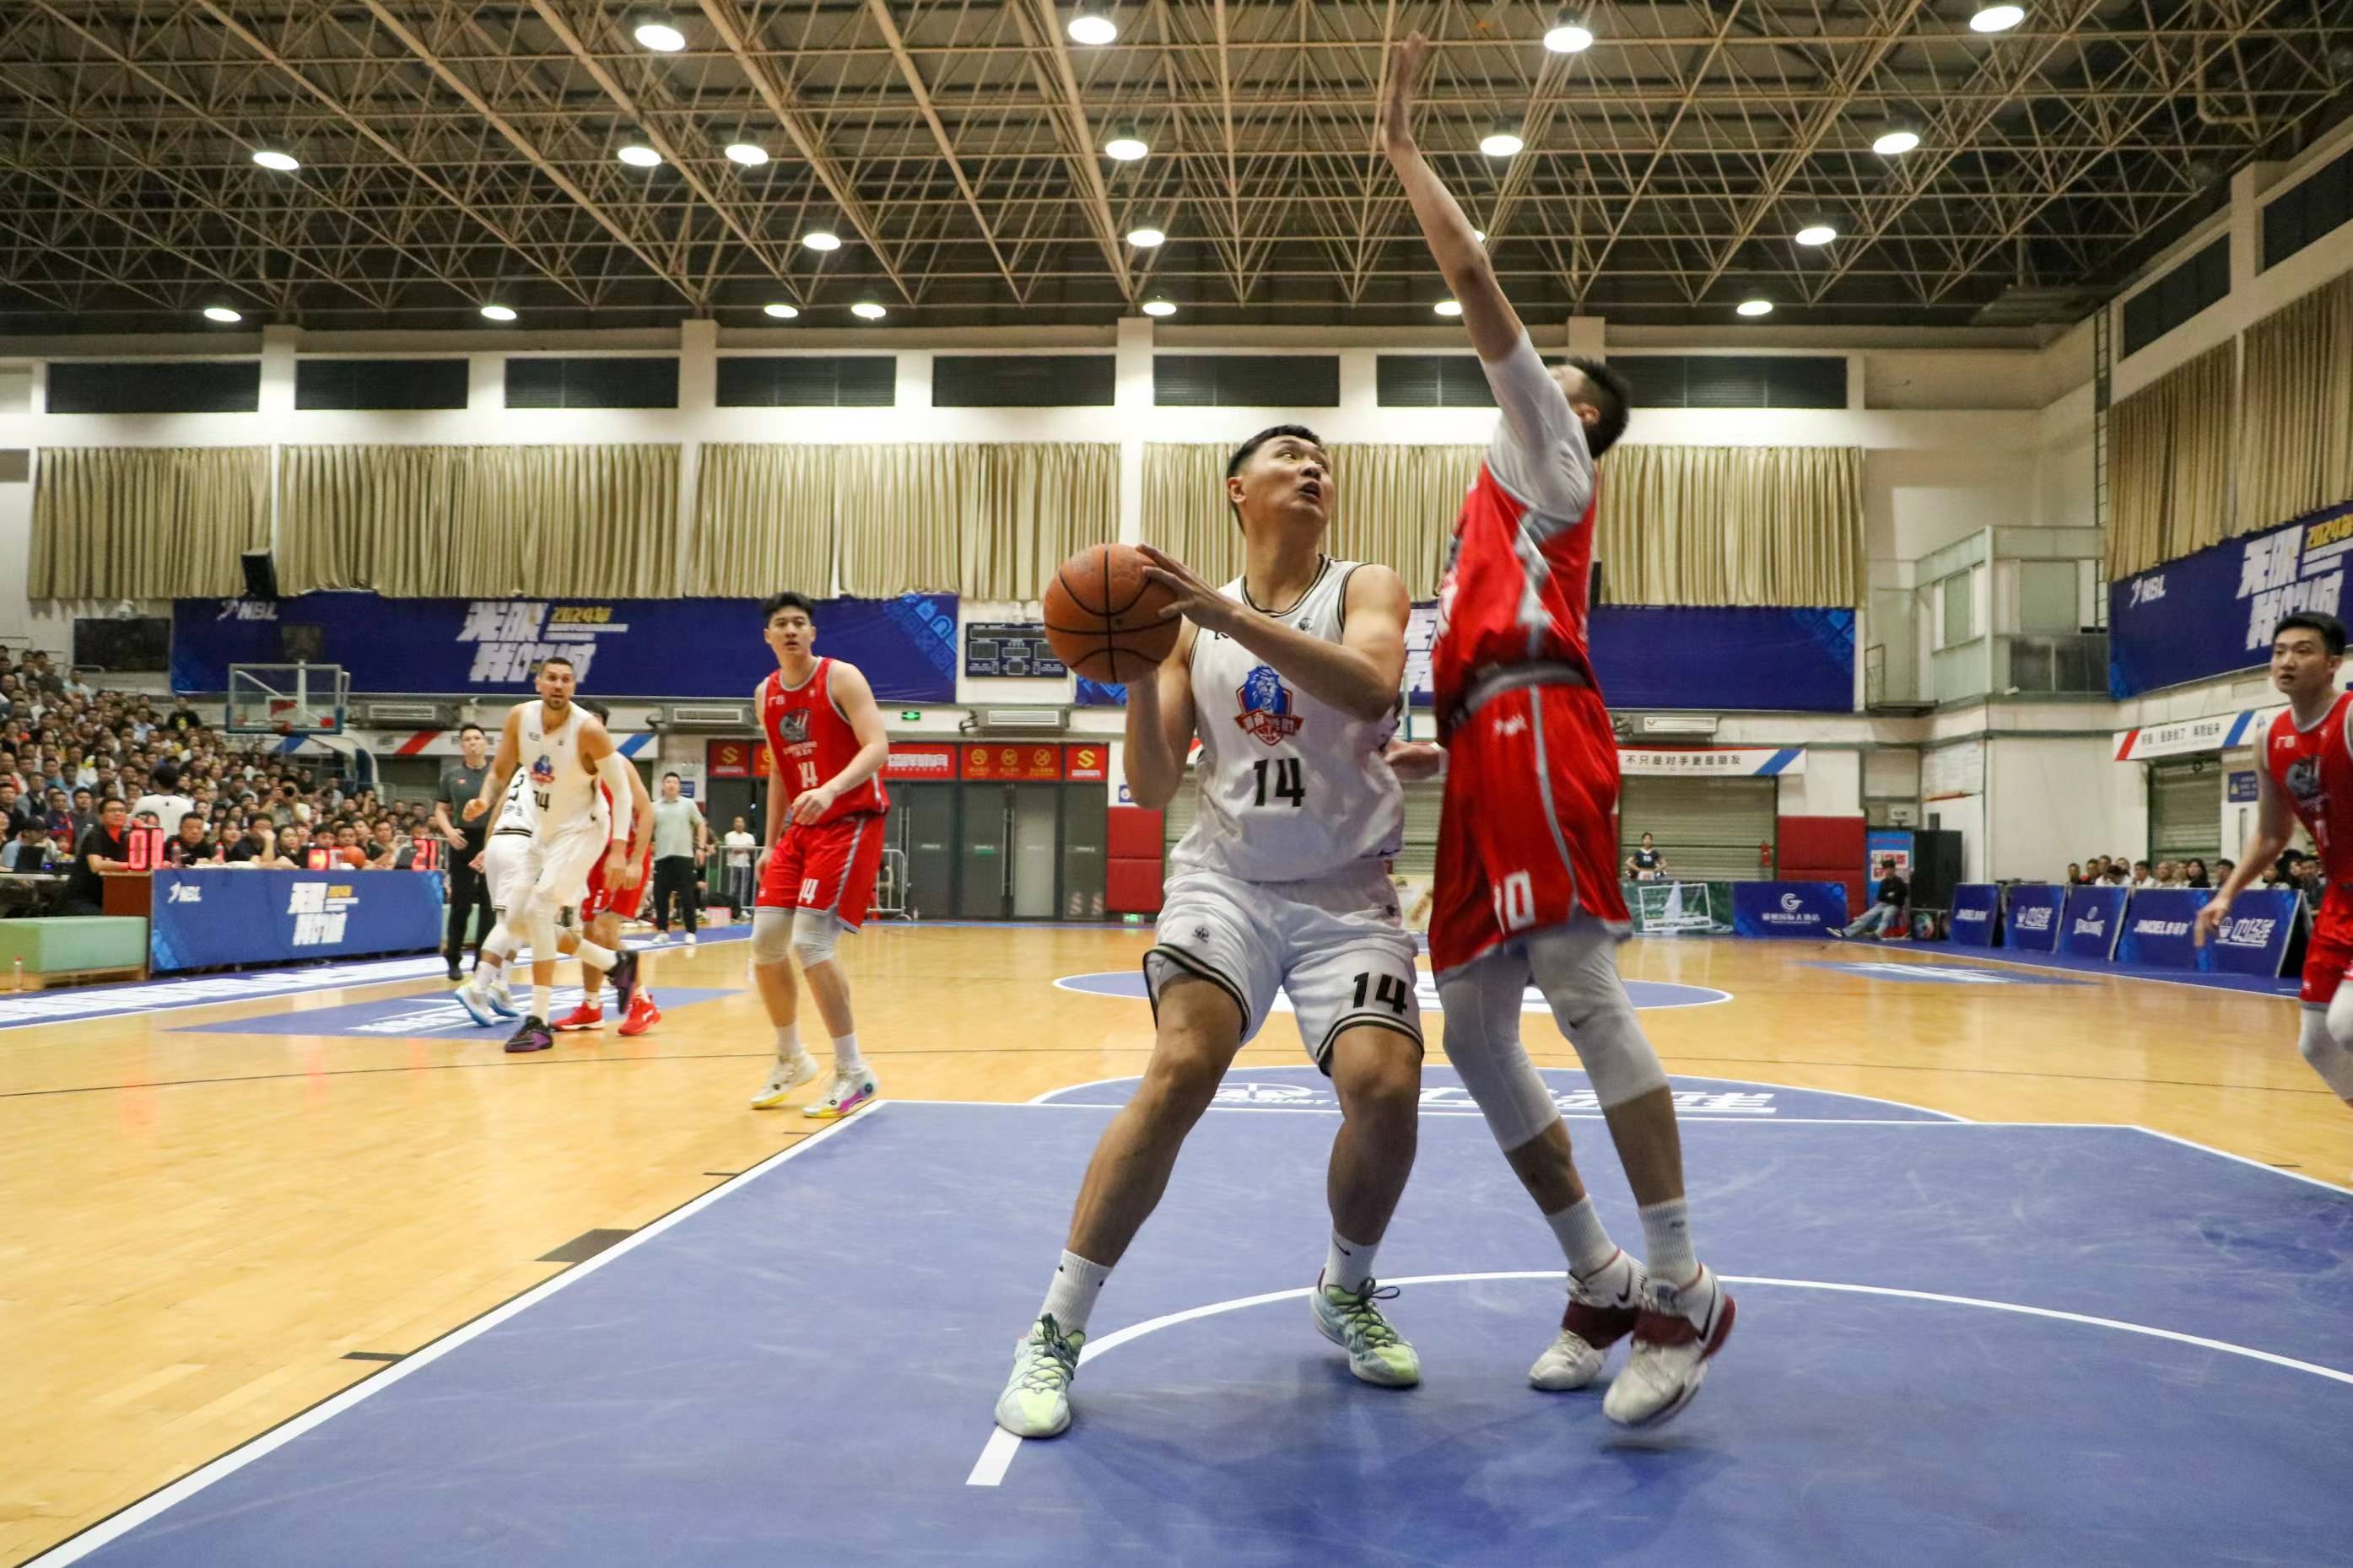 主办方供图nbl是由中国篮球协会主办的四大全国性职业篮球联赛之一